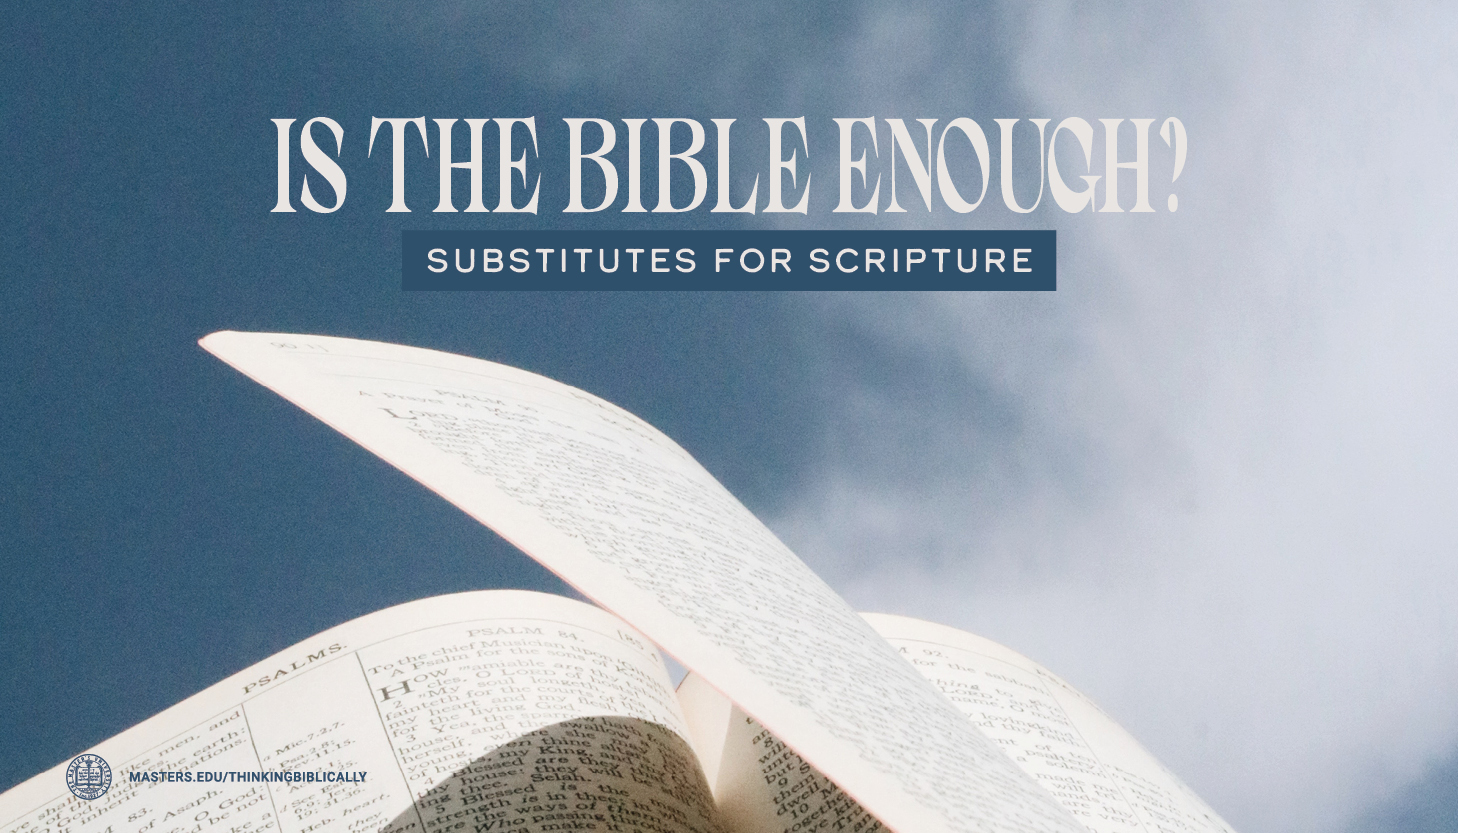 Substitutes for Scripture